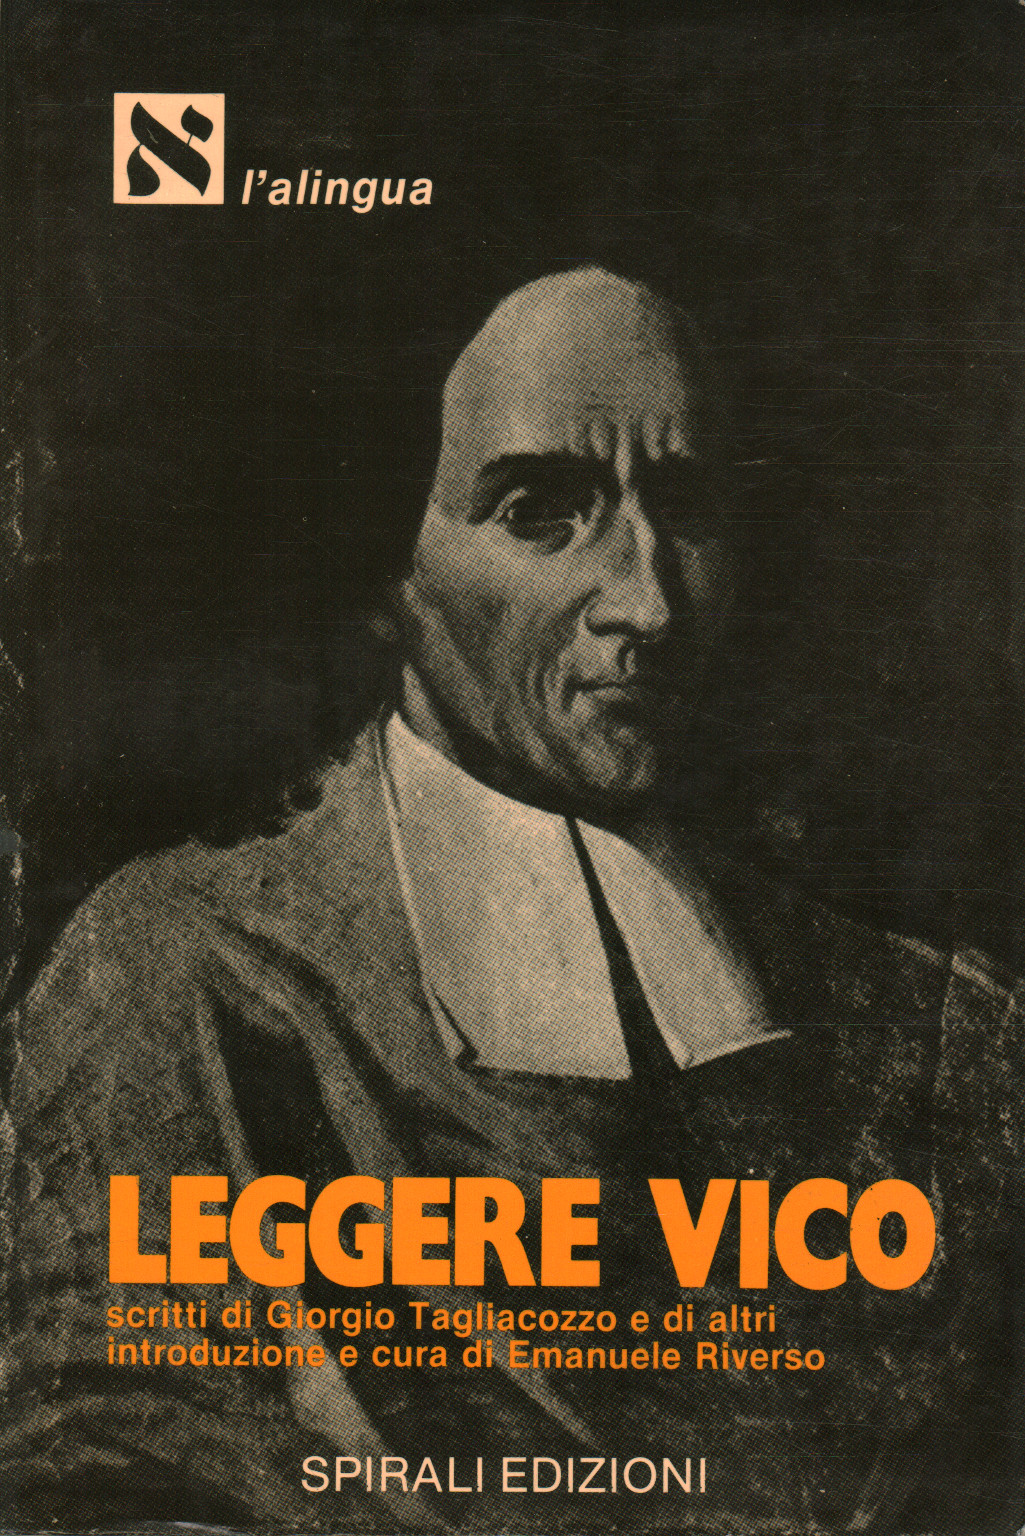 Leggere Vico, Emanuele Riverso